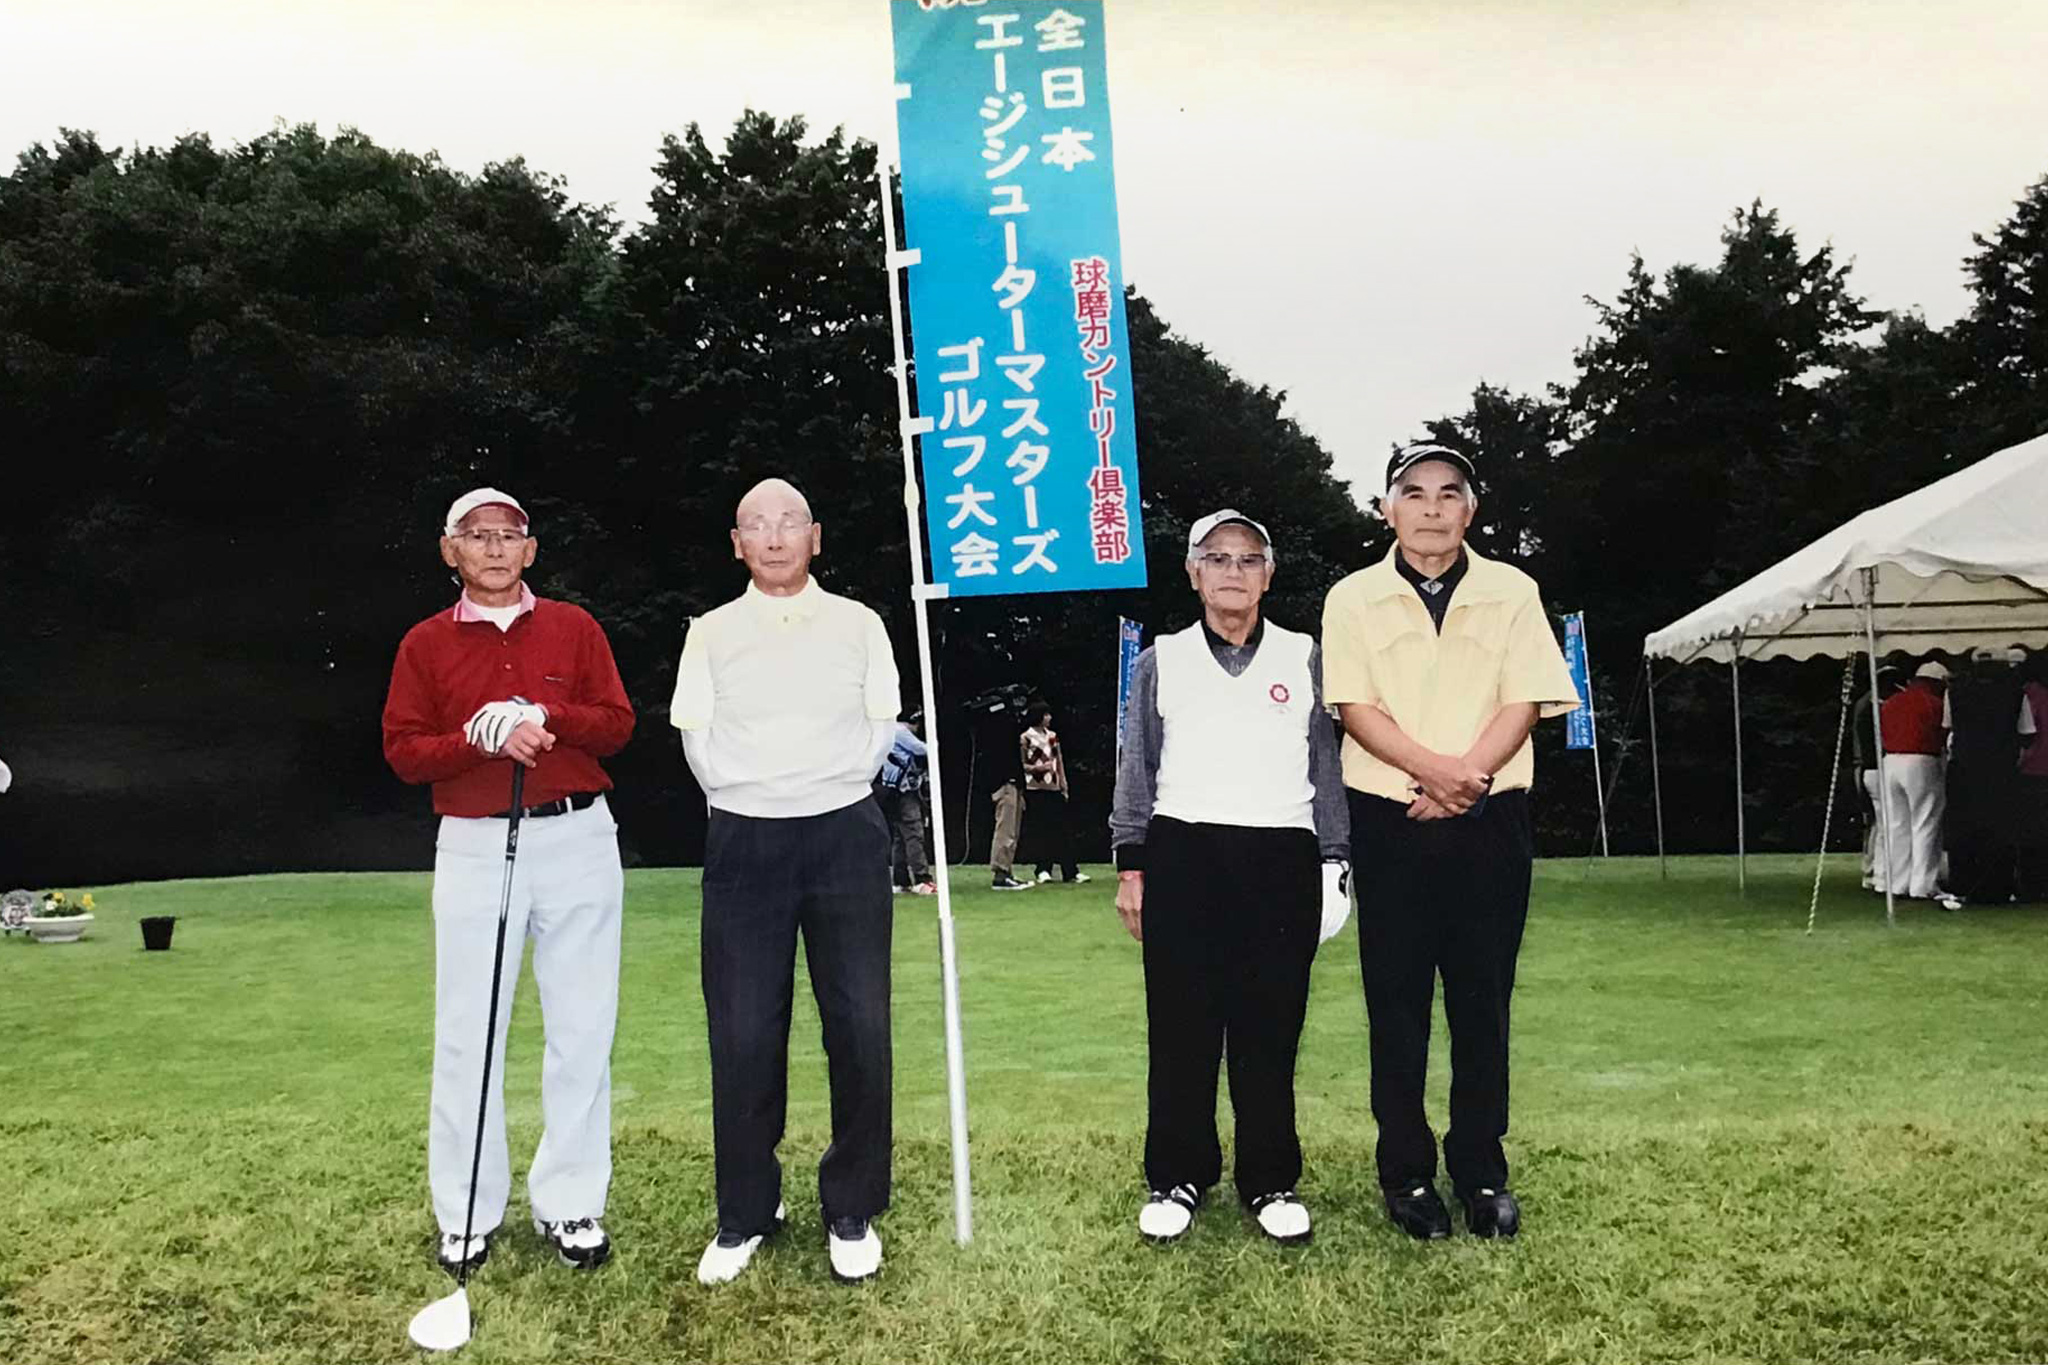 2011年 第1回全日本エージシューターマスターズゴルフ選手権記念写真